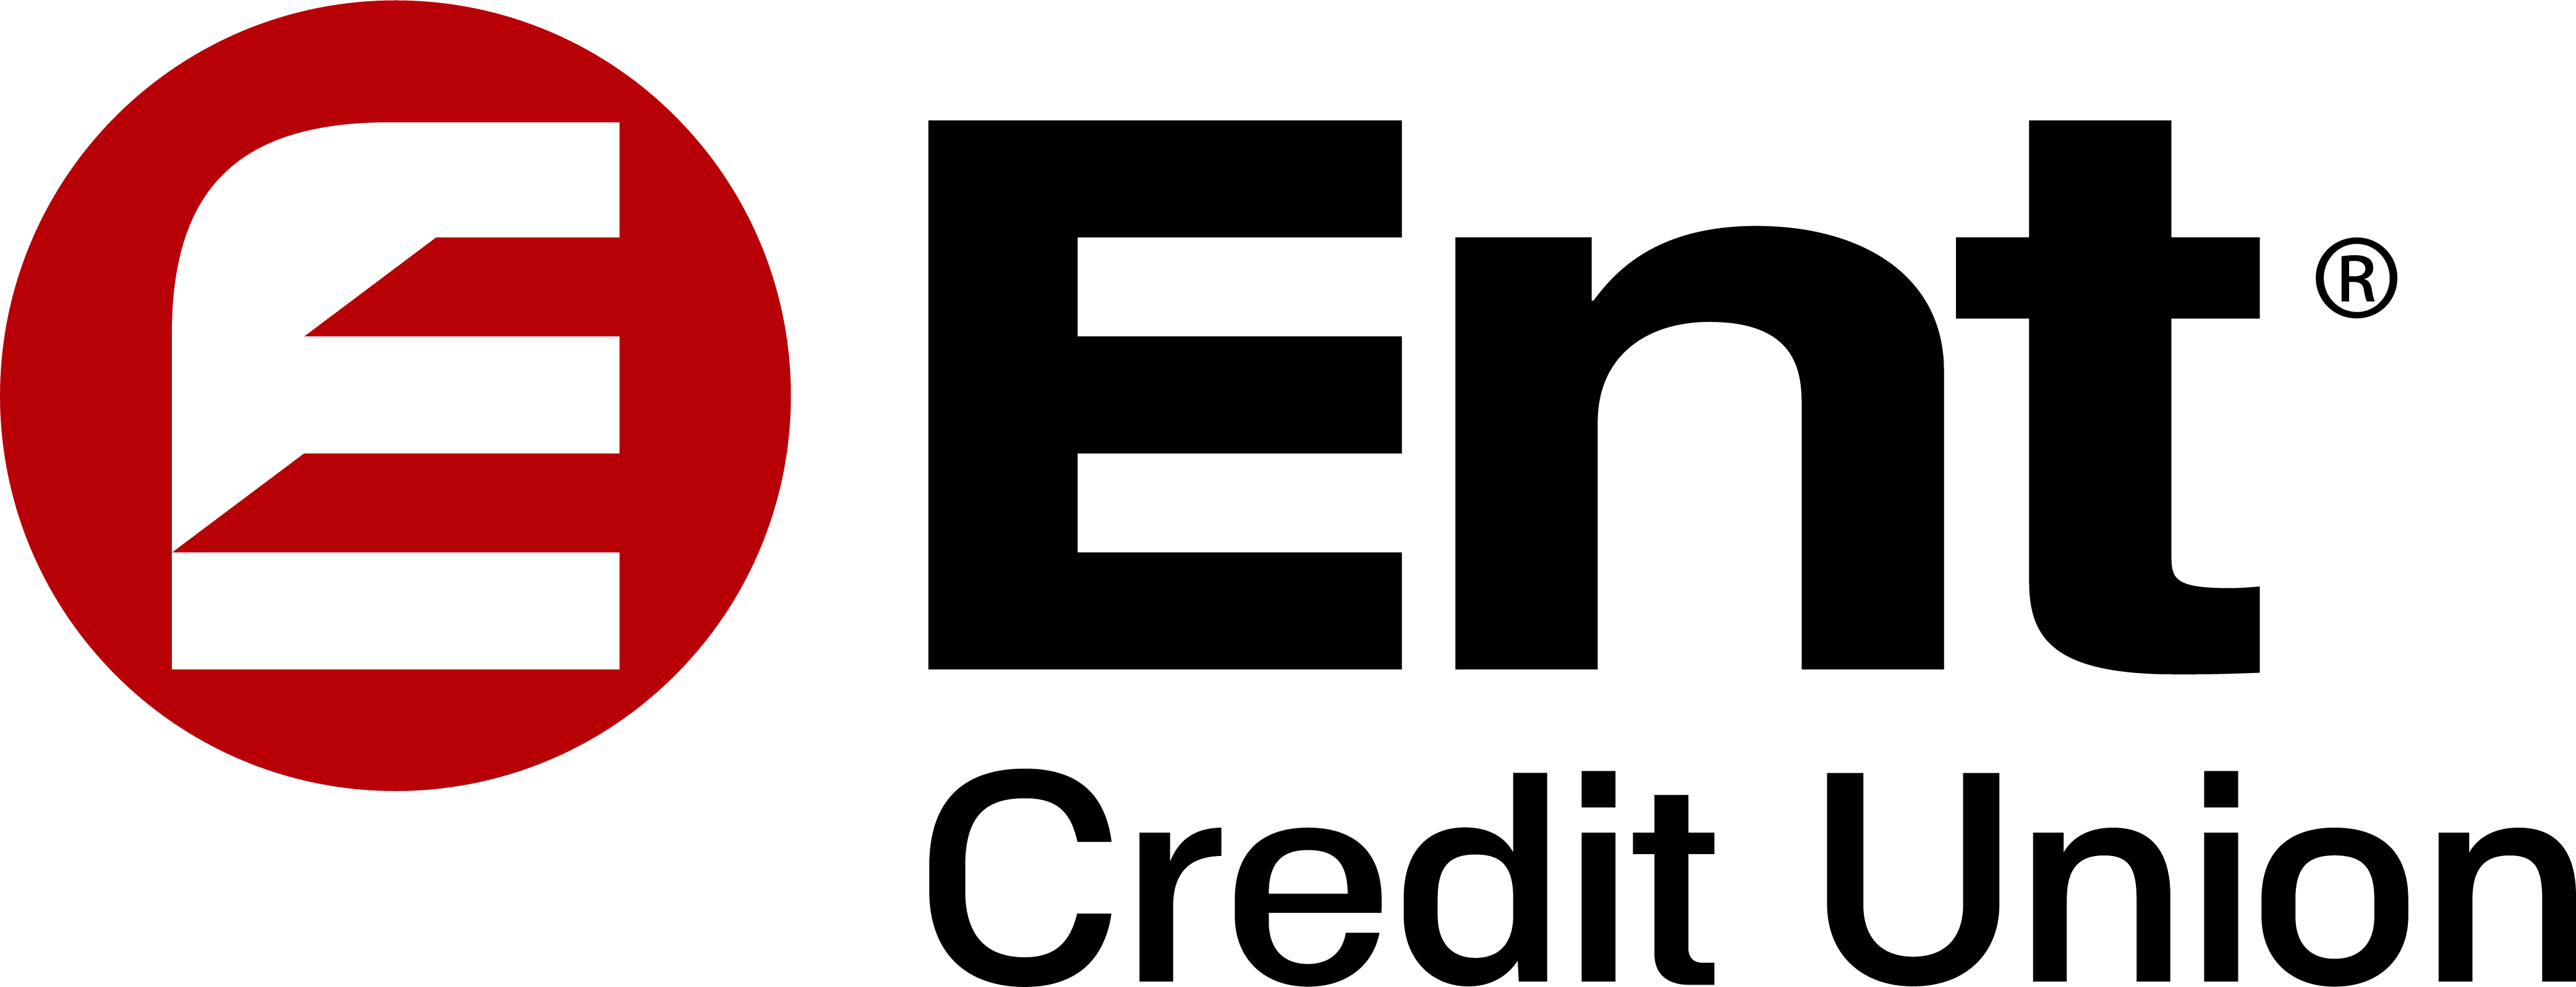 Ent Credit Union (Tier 2)